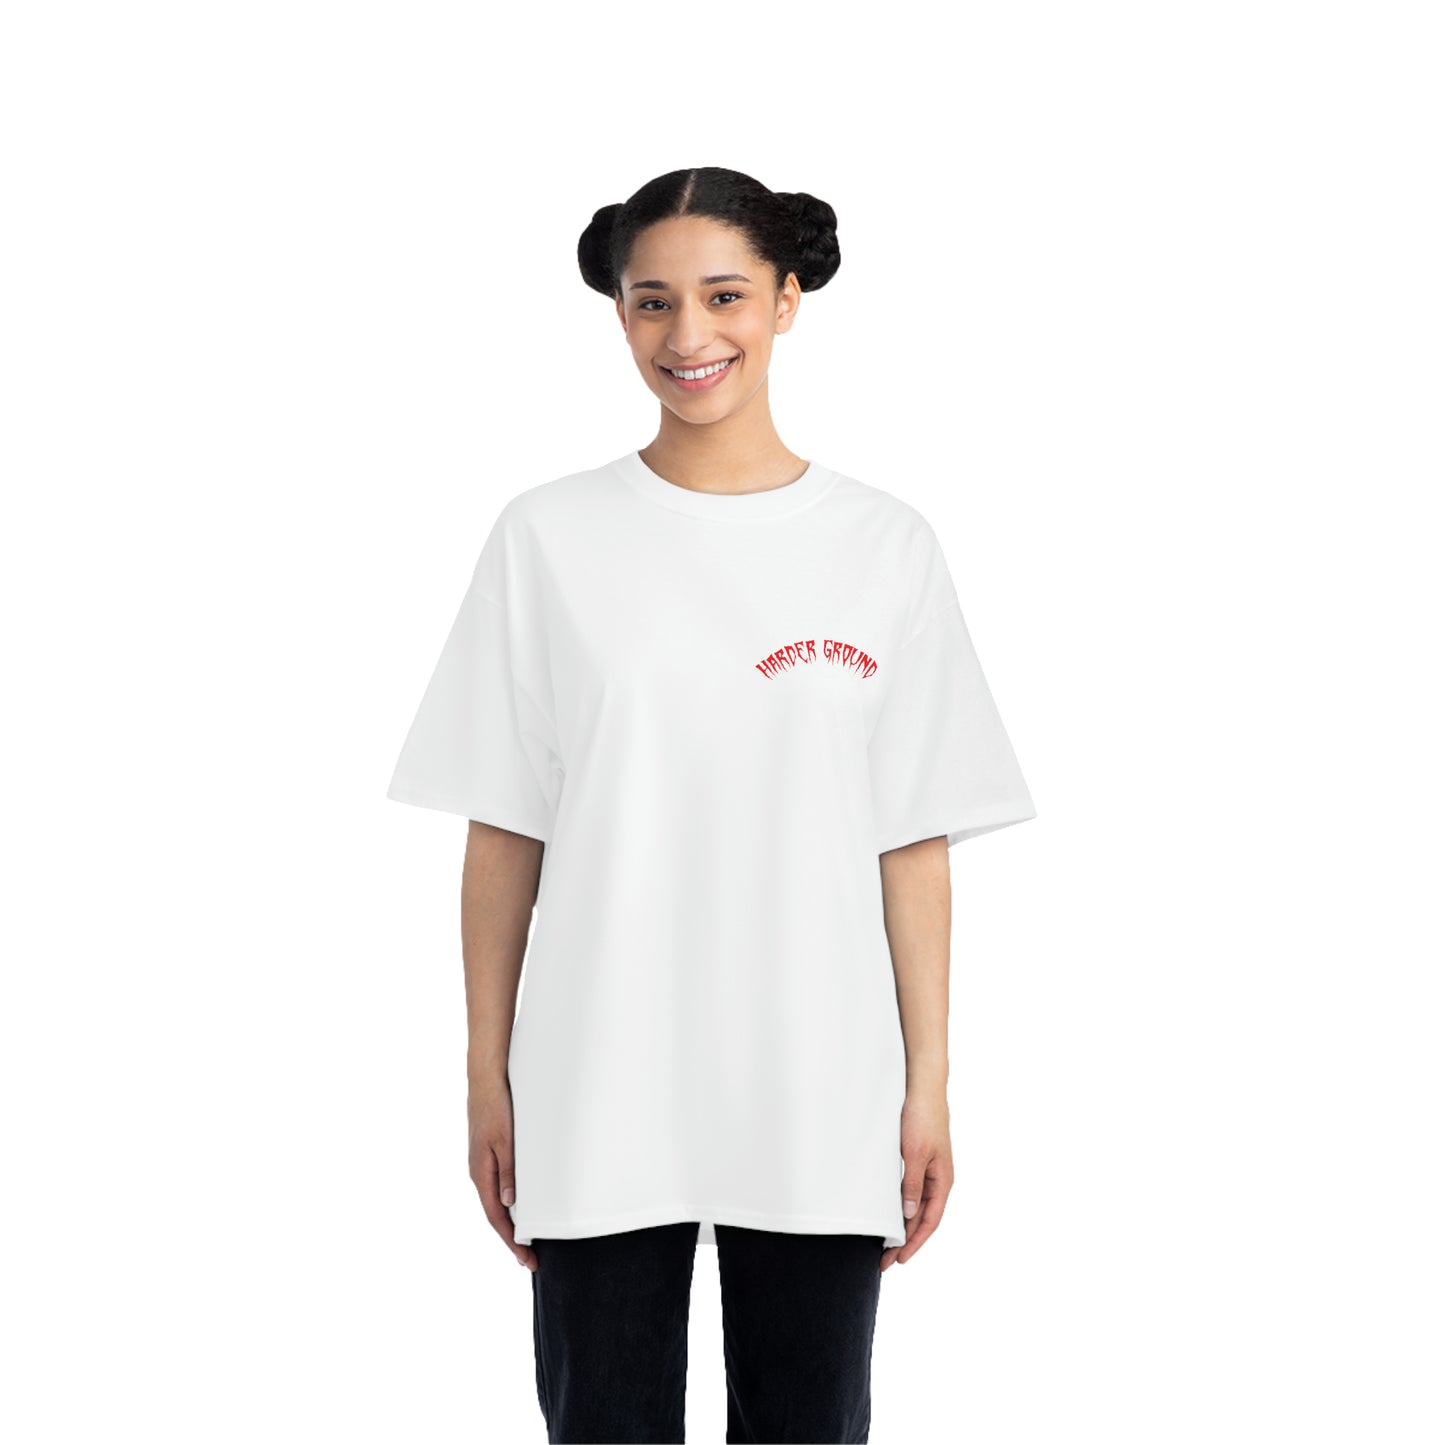 ITALY Harderground - Front & back logos - Beefy-T®  Short-Sleeve T-Shirt